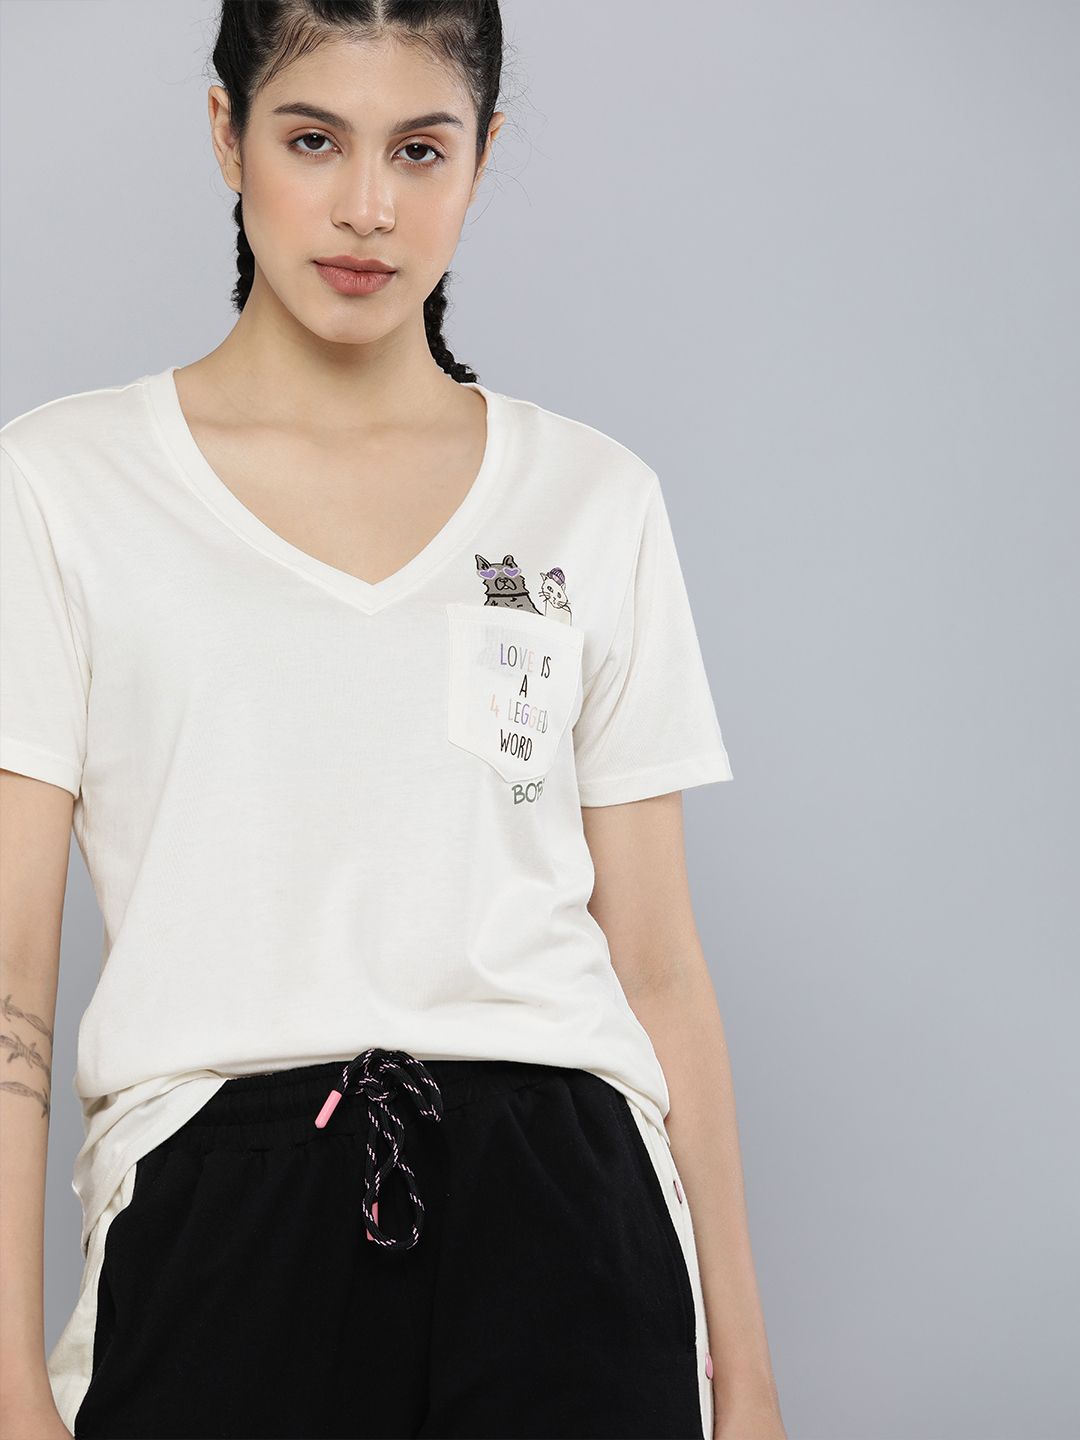 Skechers Women White 4 Legged V-Neck Pocket T-shirt Price in India